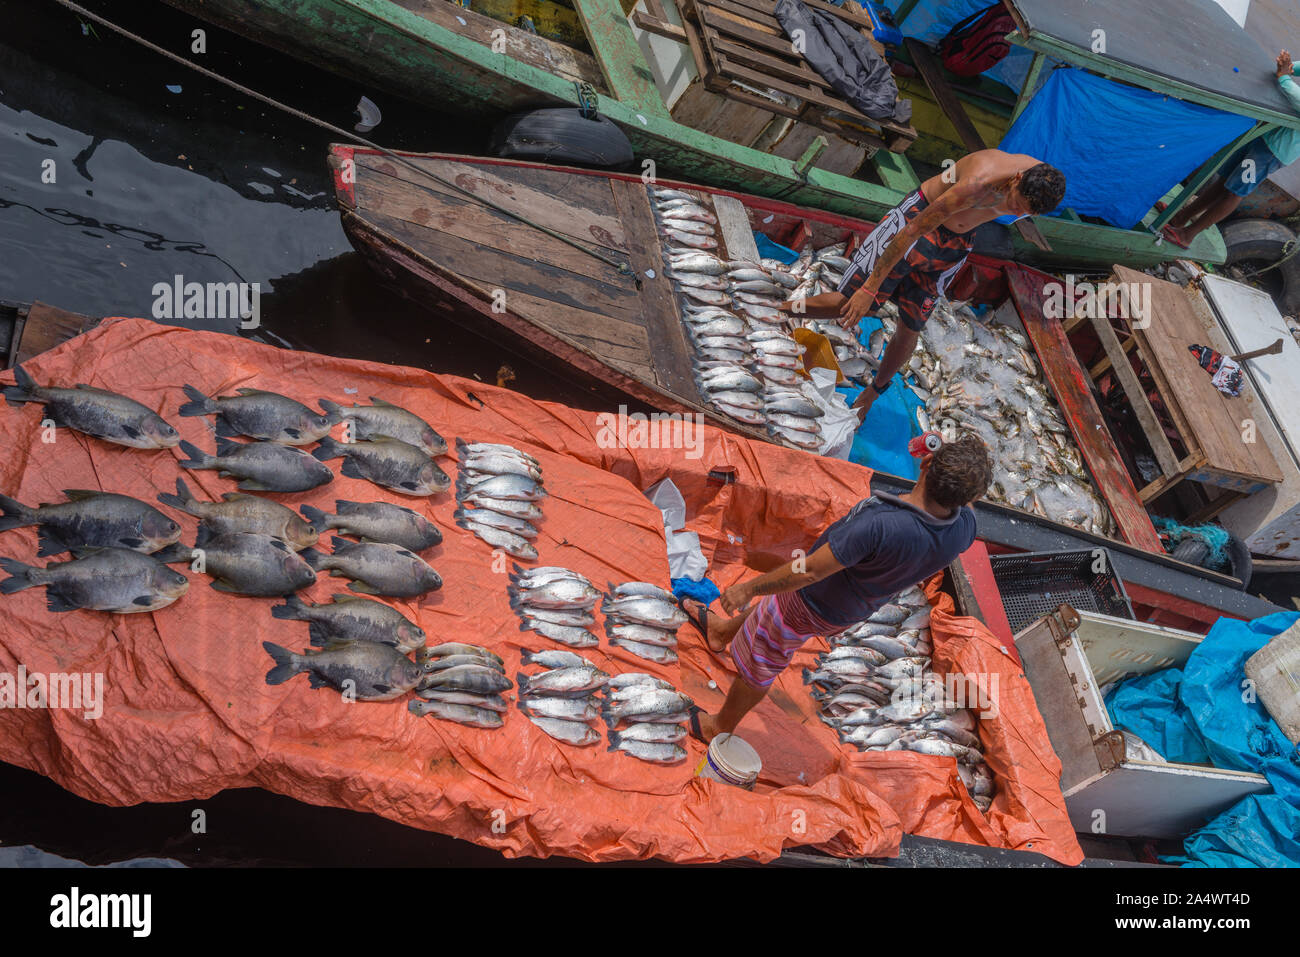 La pêche à chabor à Porto Flutante ou port flottant, ouvert les bateaux de pêche avec les propriétaires de vendre du poisson frais, Manaus, l'Amazone, Brésil, Amérique Latine Banque D'Images